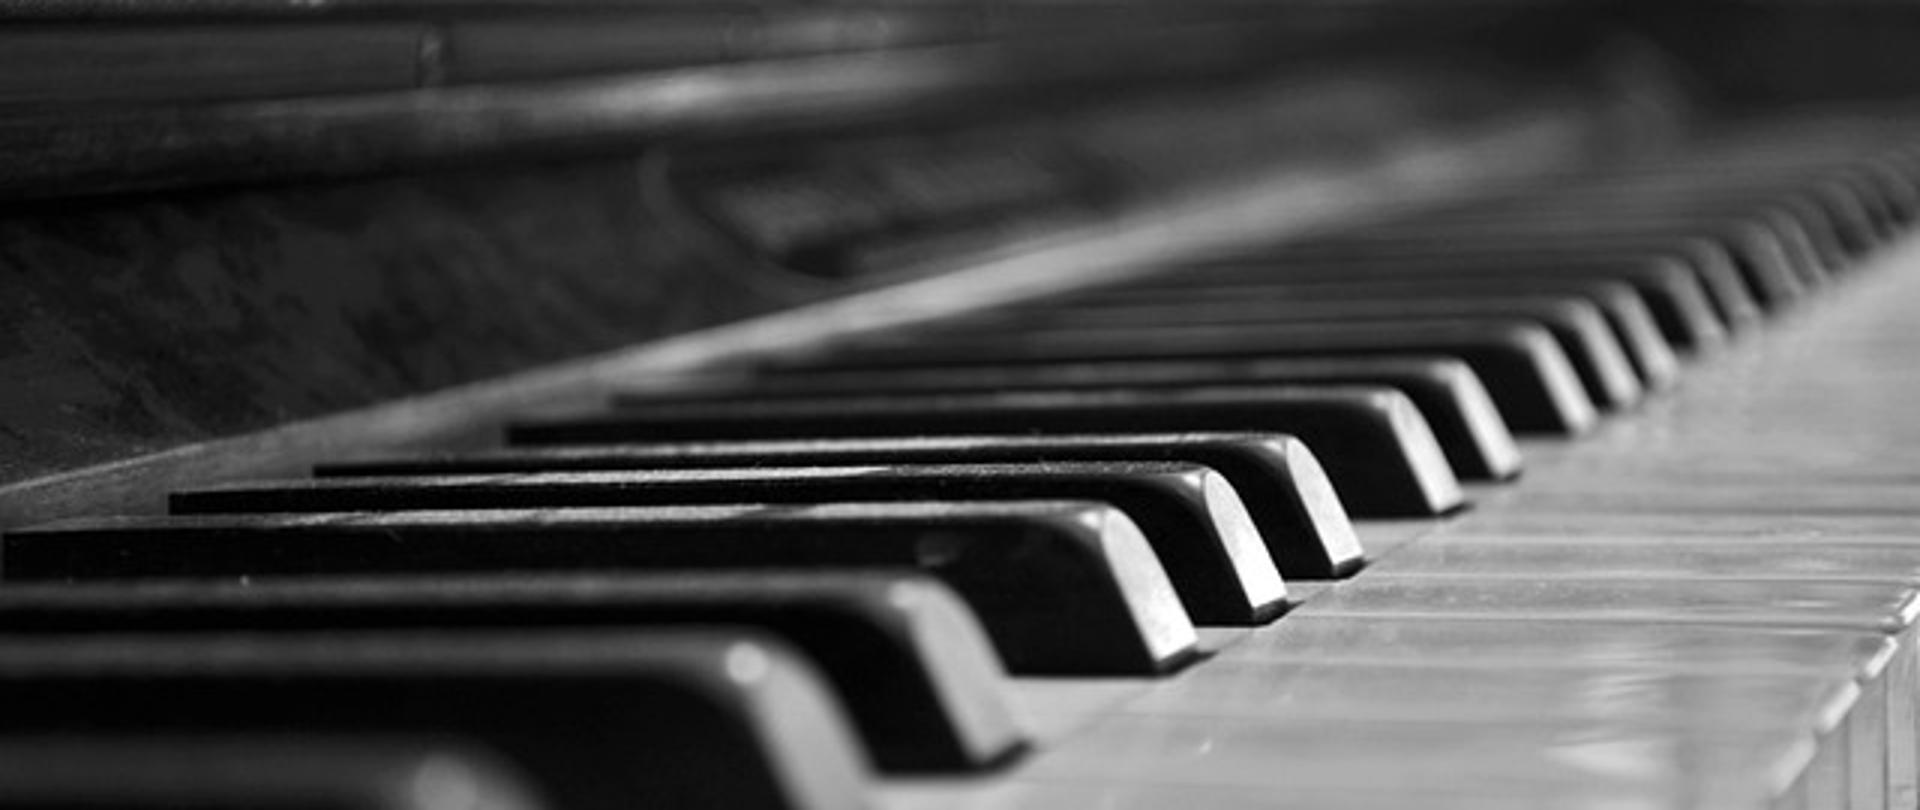 Zdjęcie przedstawia klawiaturę fortepianu w odcieniach szarości